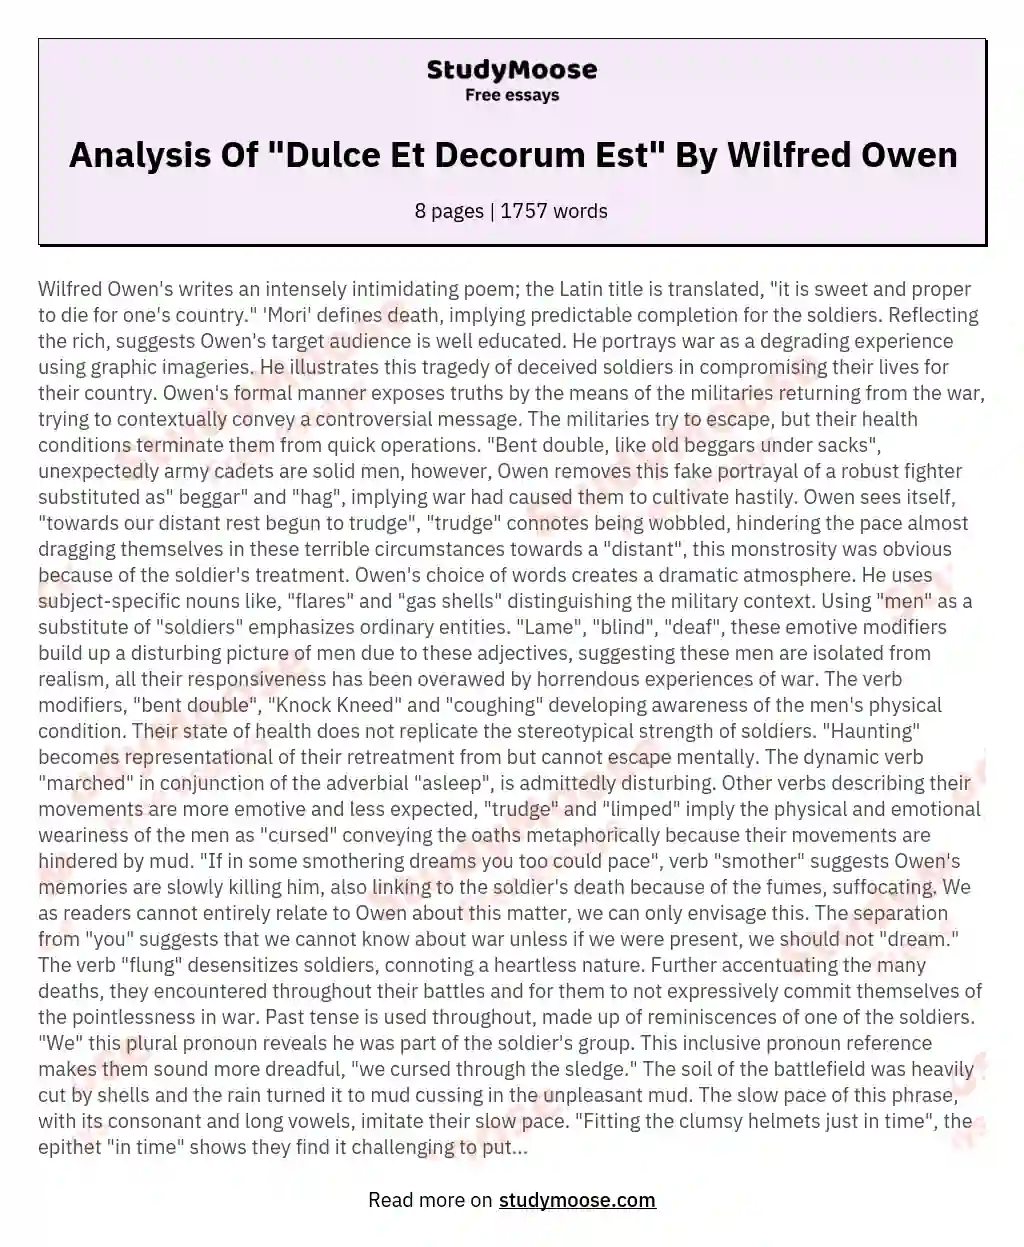 Analysis Of "Dulce Et Decorum Est" By Wilfred Owen